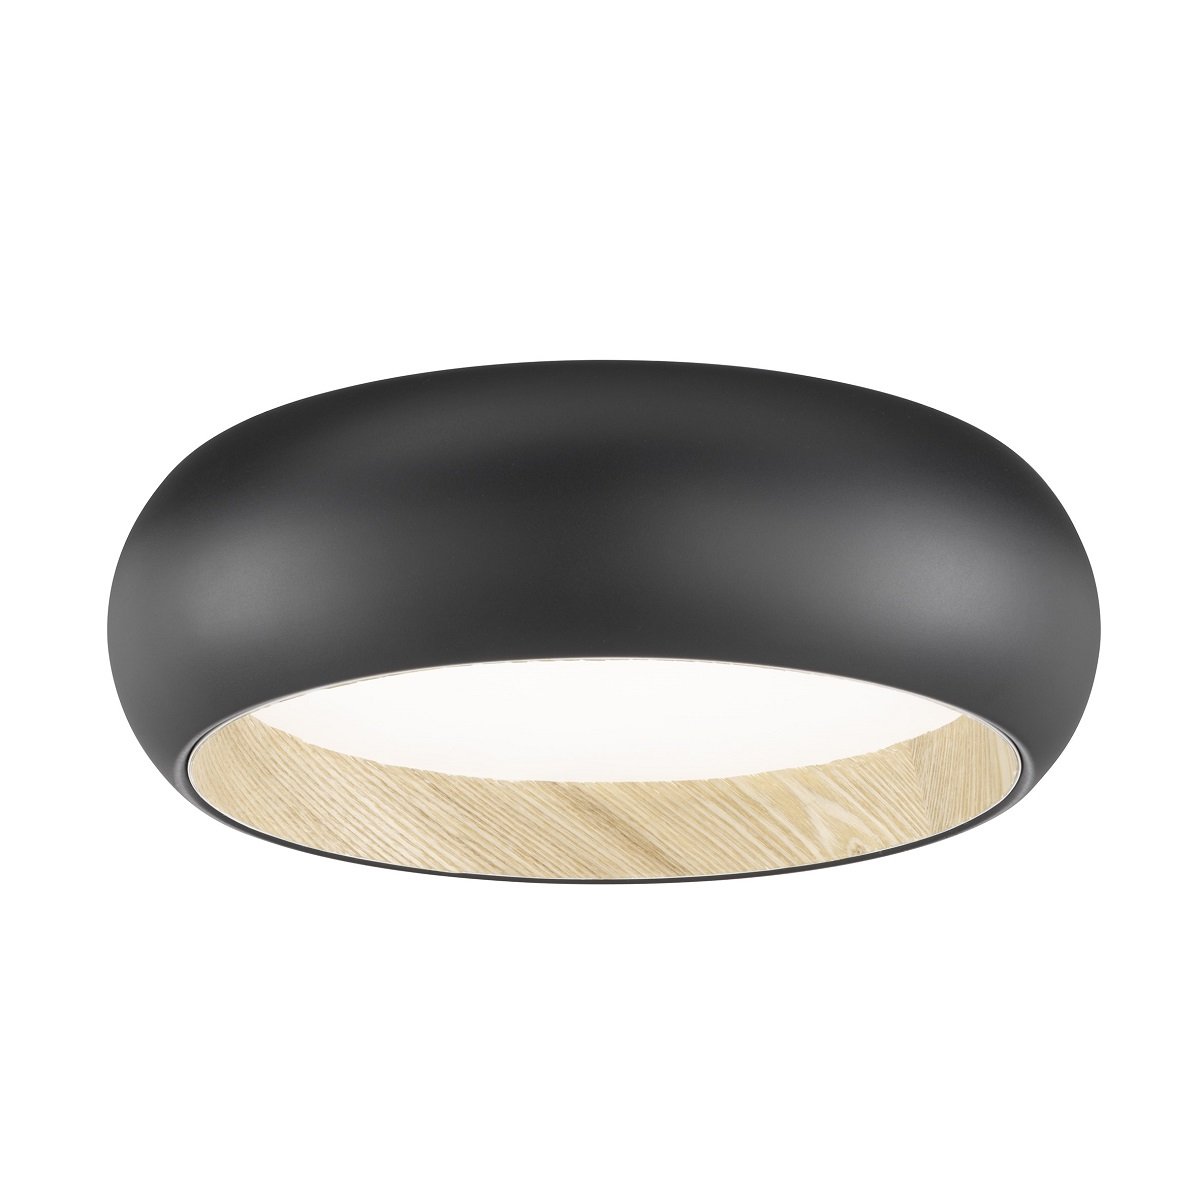 SCHÖNER WOHNEN-Kollektion LED Deckenleuchte Wood schwarz eiche natur 821338  --> Leuchten & Lampen online kaufen im Shop